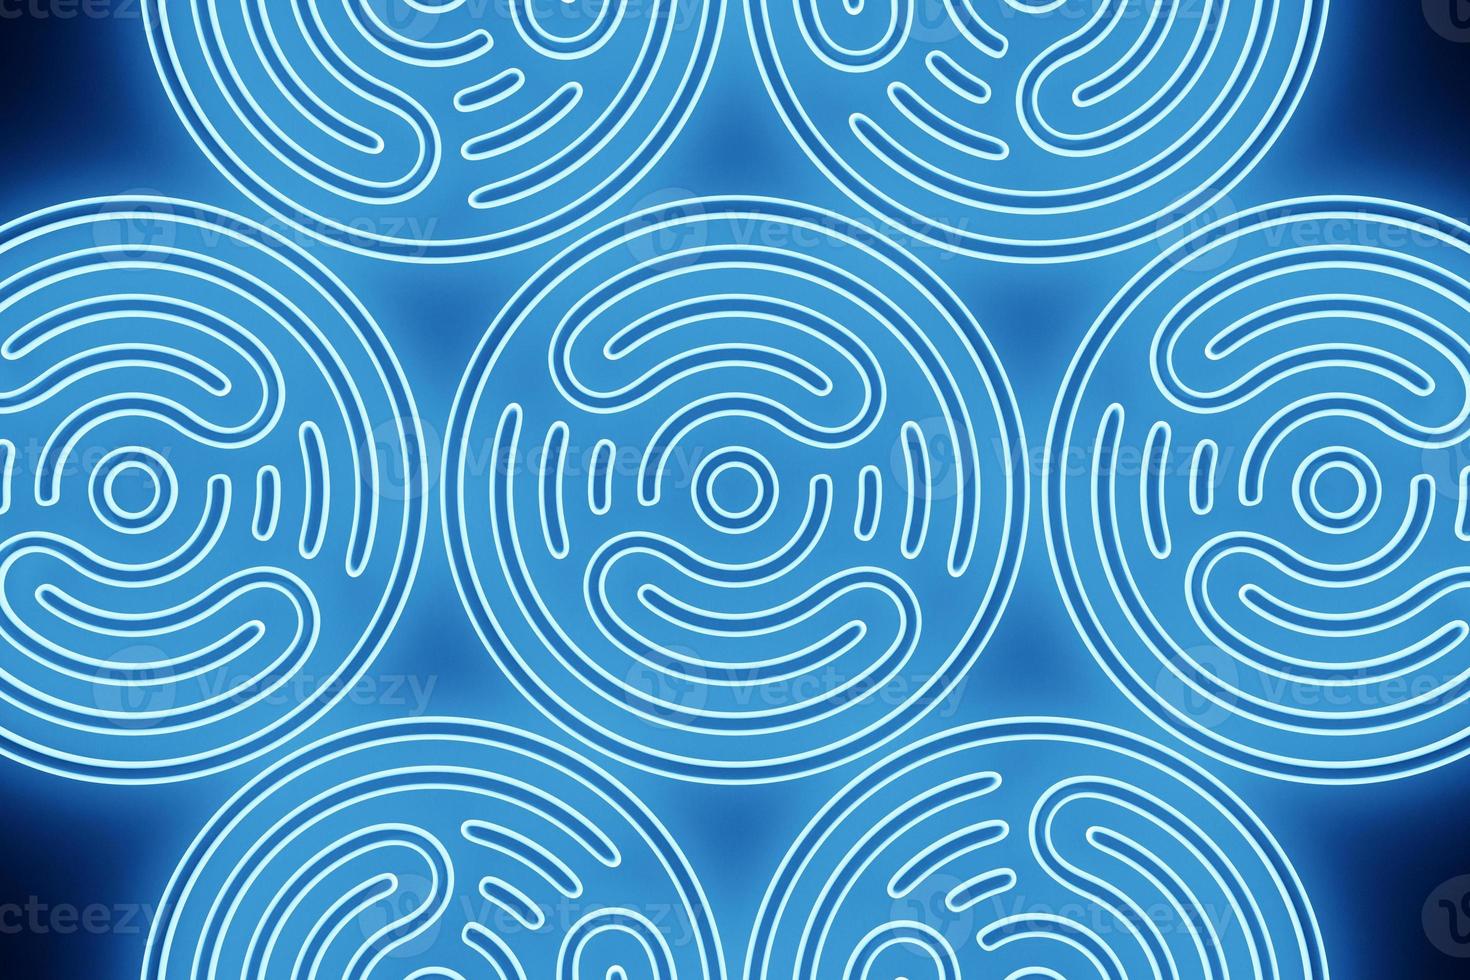 rendu 3d fractal rond bleu abstrait, portail. spirale ronde colorée. photo